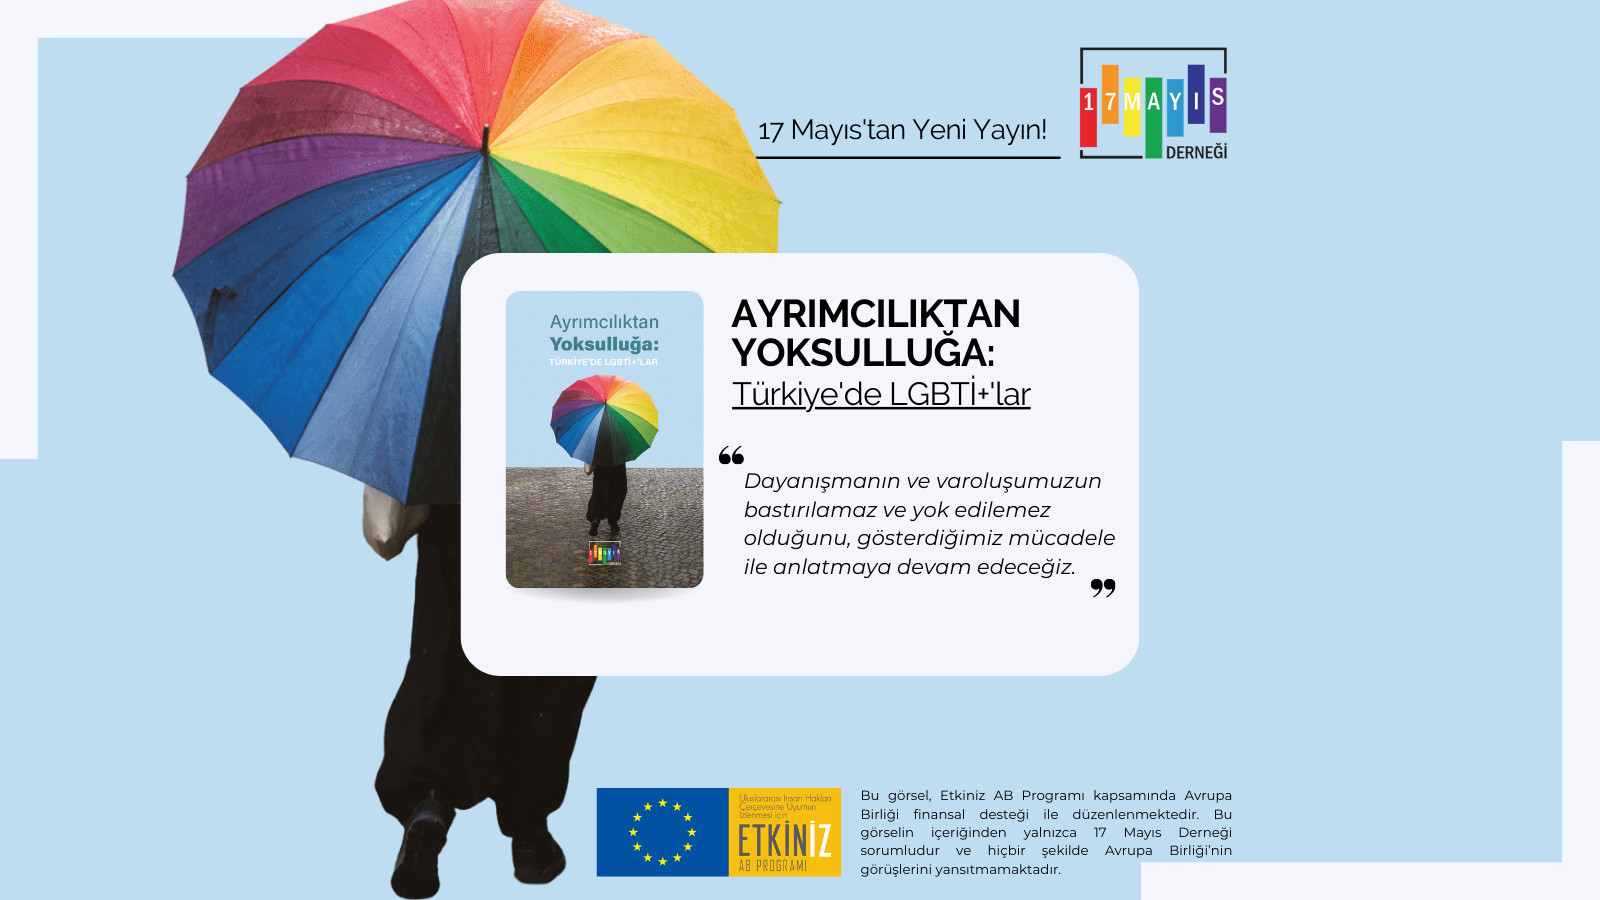 “Ayrımcılıktan Yoksulluğa: Türkiye’de LGBTİ+’lar” raporu çıktı | Kaos GL - LGBTİ+ Haber Portalı Haber